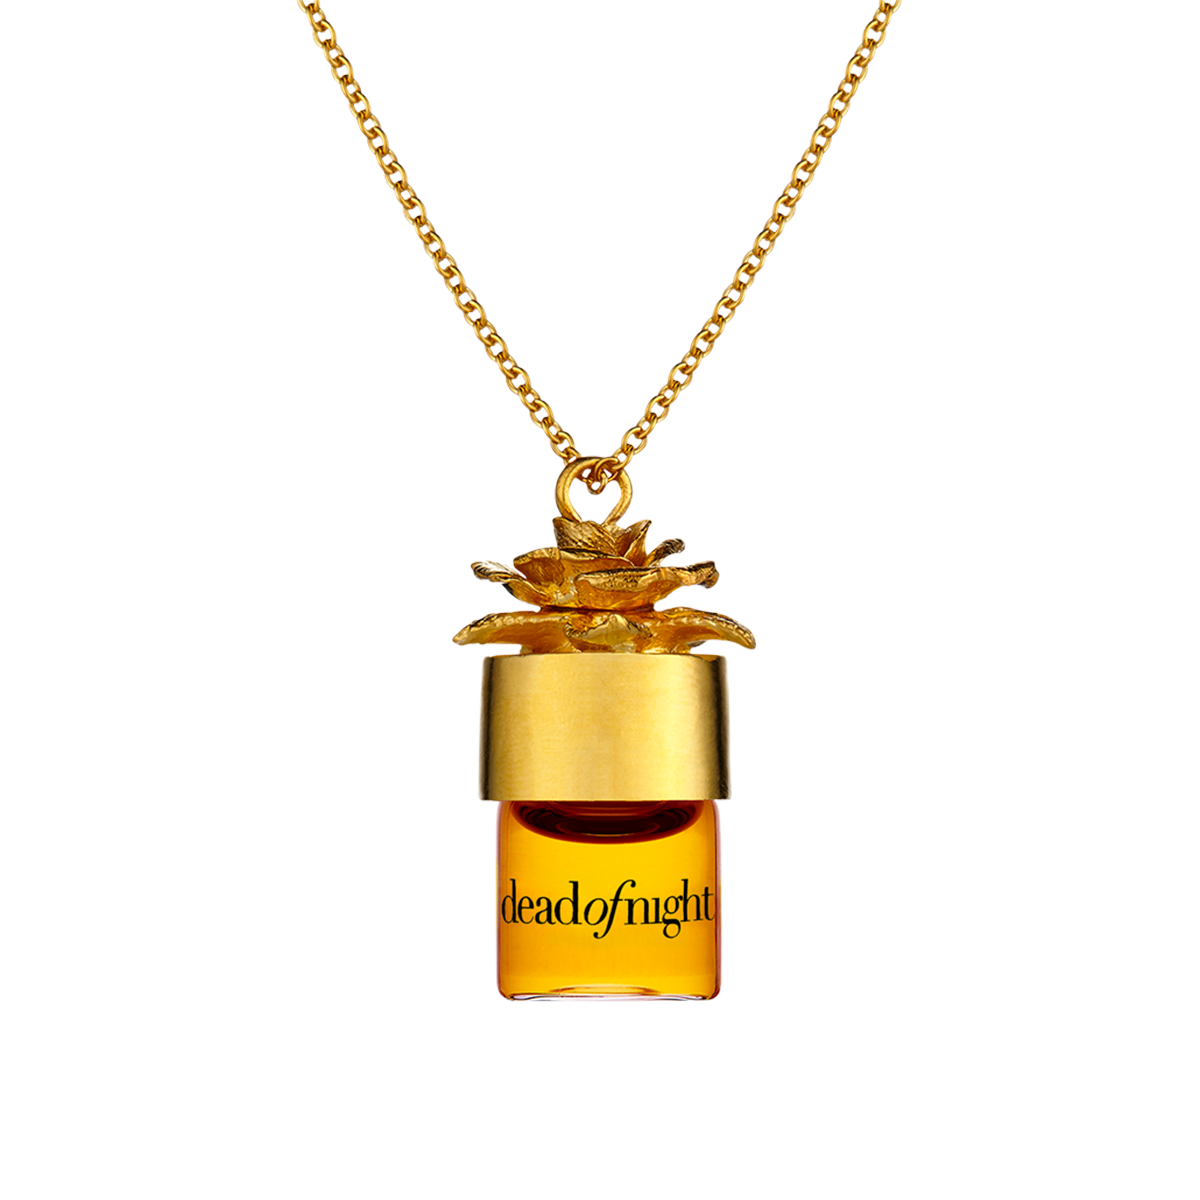 Strangelove - Deadofnight oil 24" potion pendant